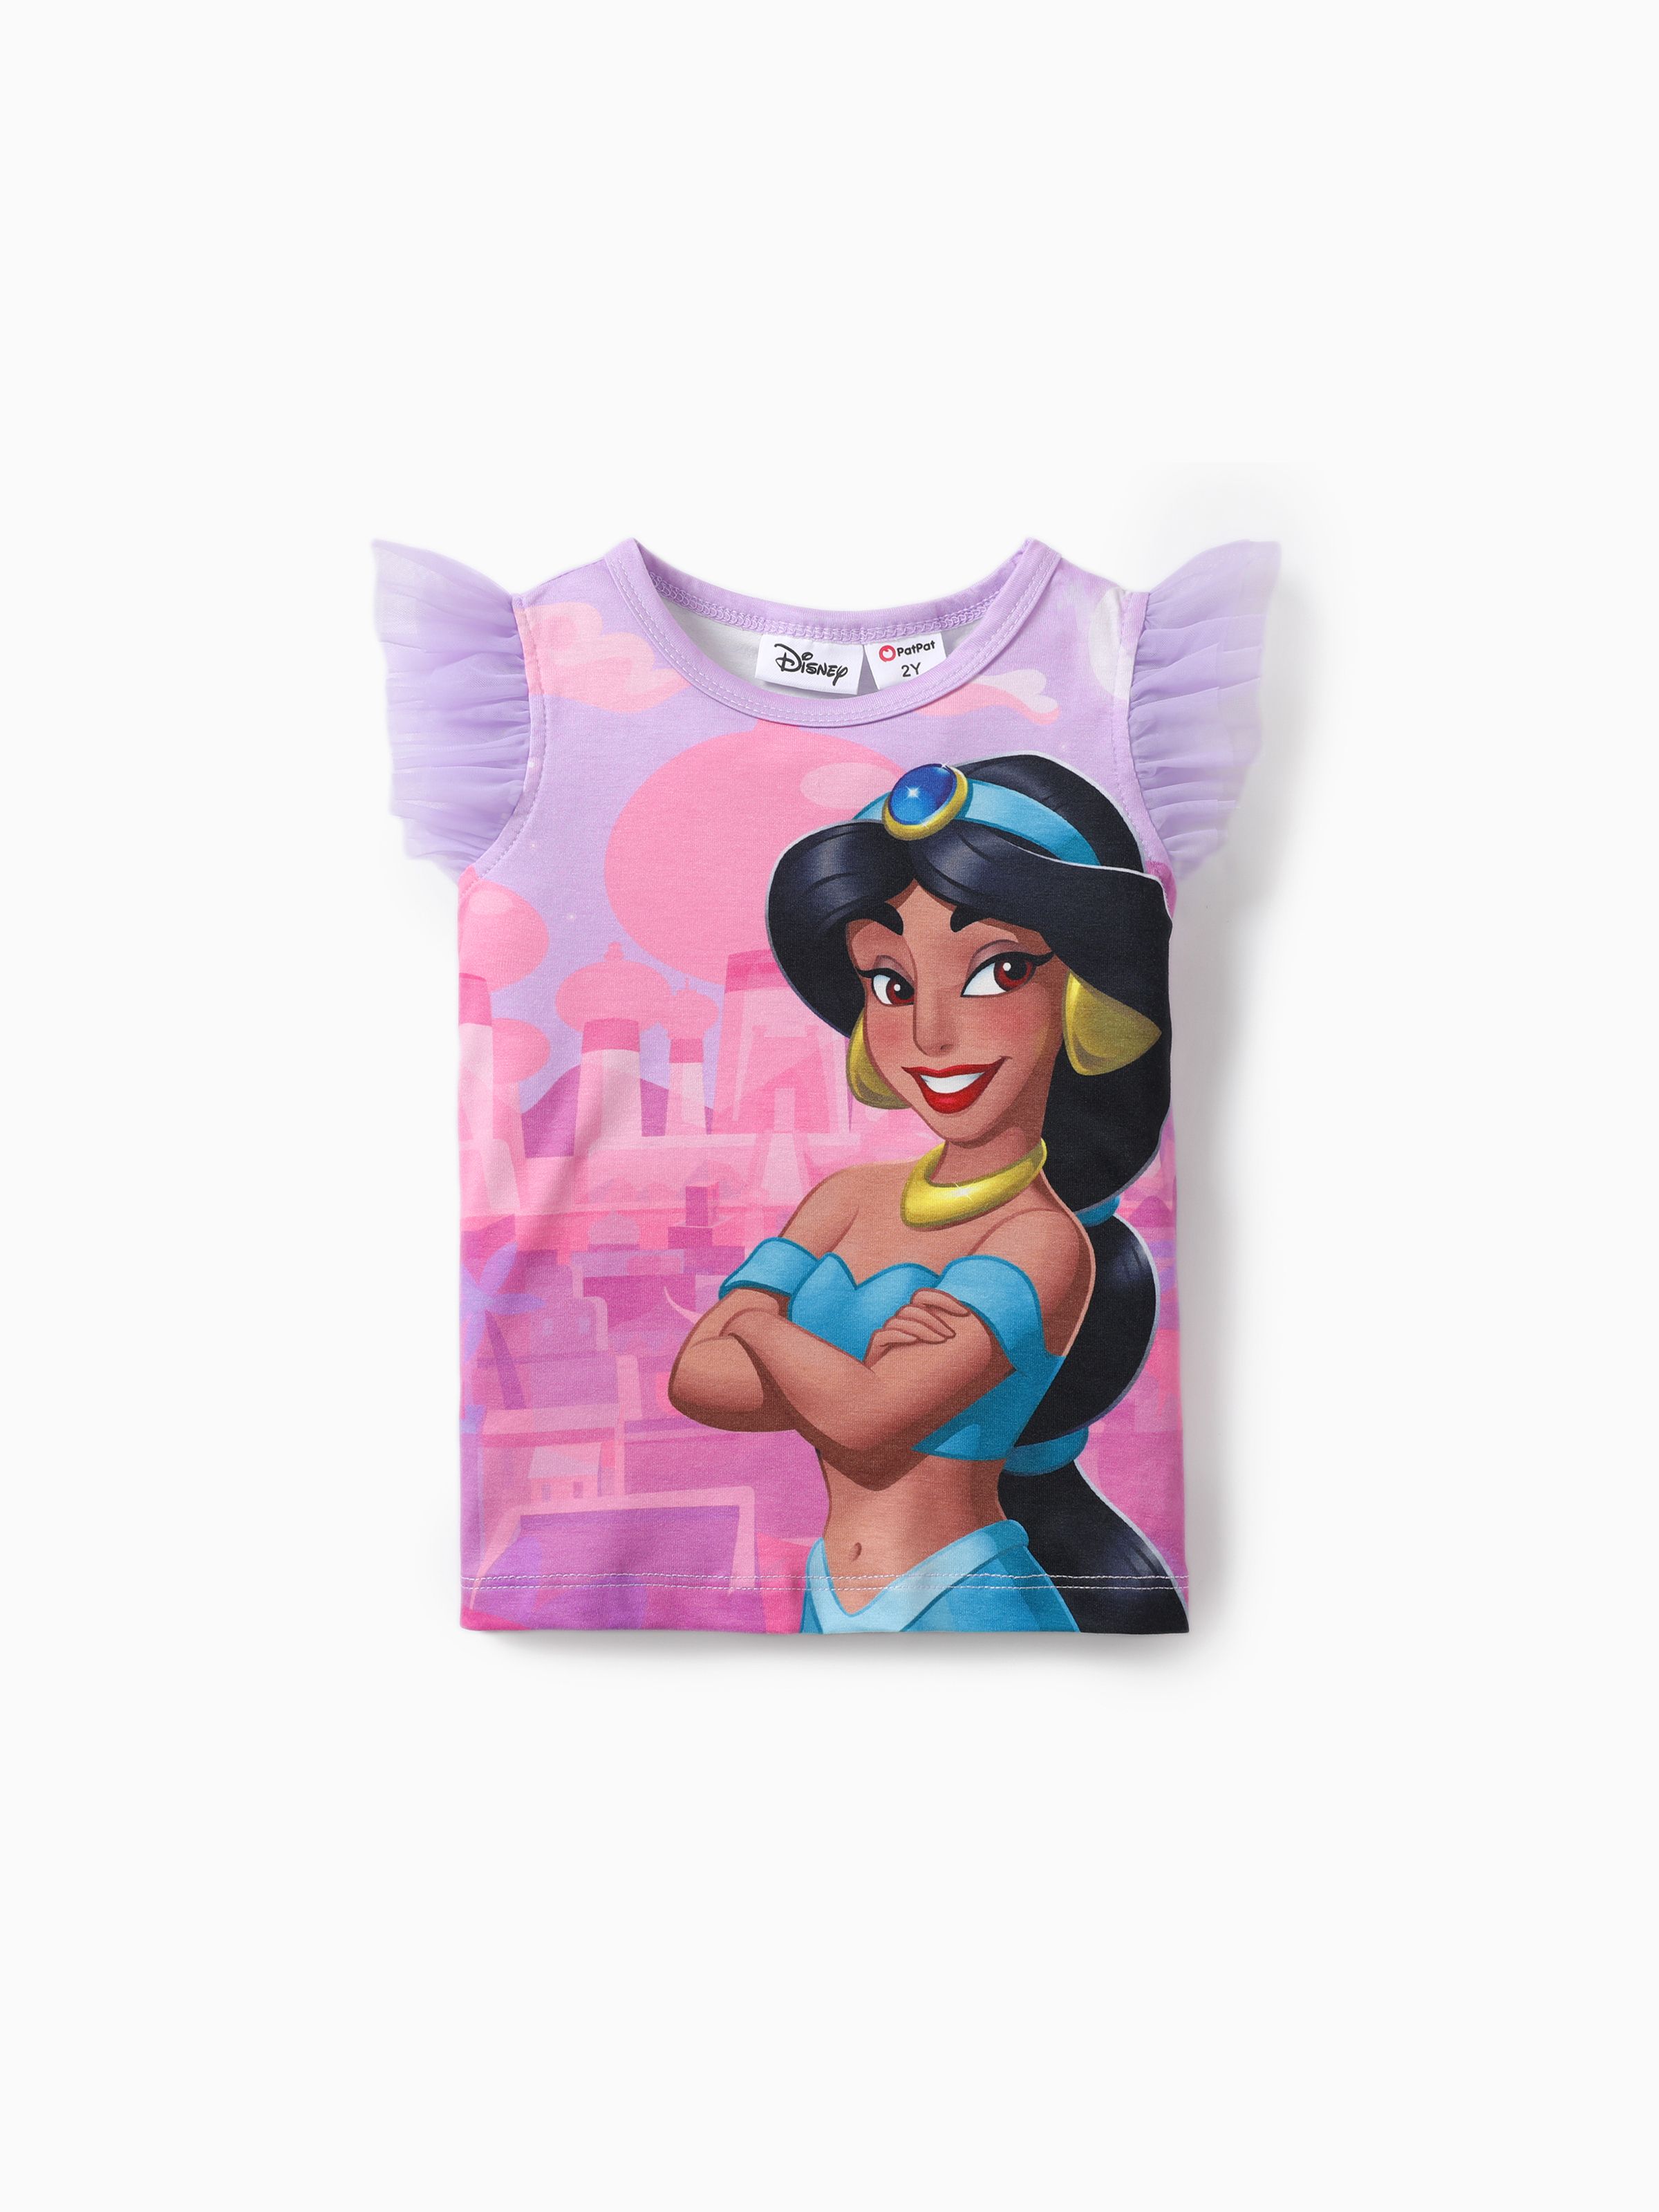 

Disney Princess Toddler Girl Naia™ Character Print with Ruffled Mesh Sleeve Top